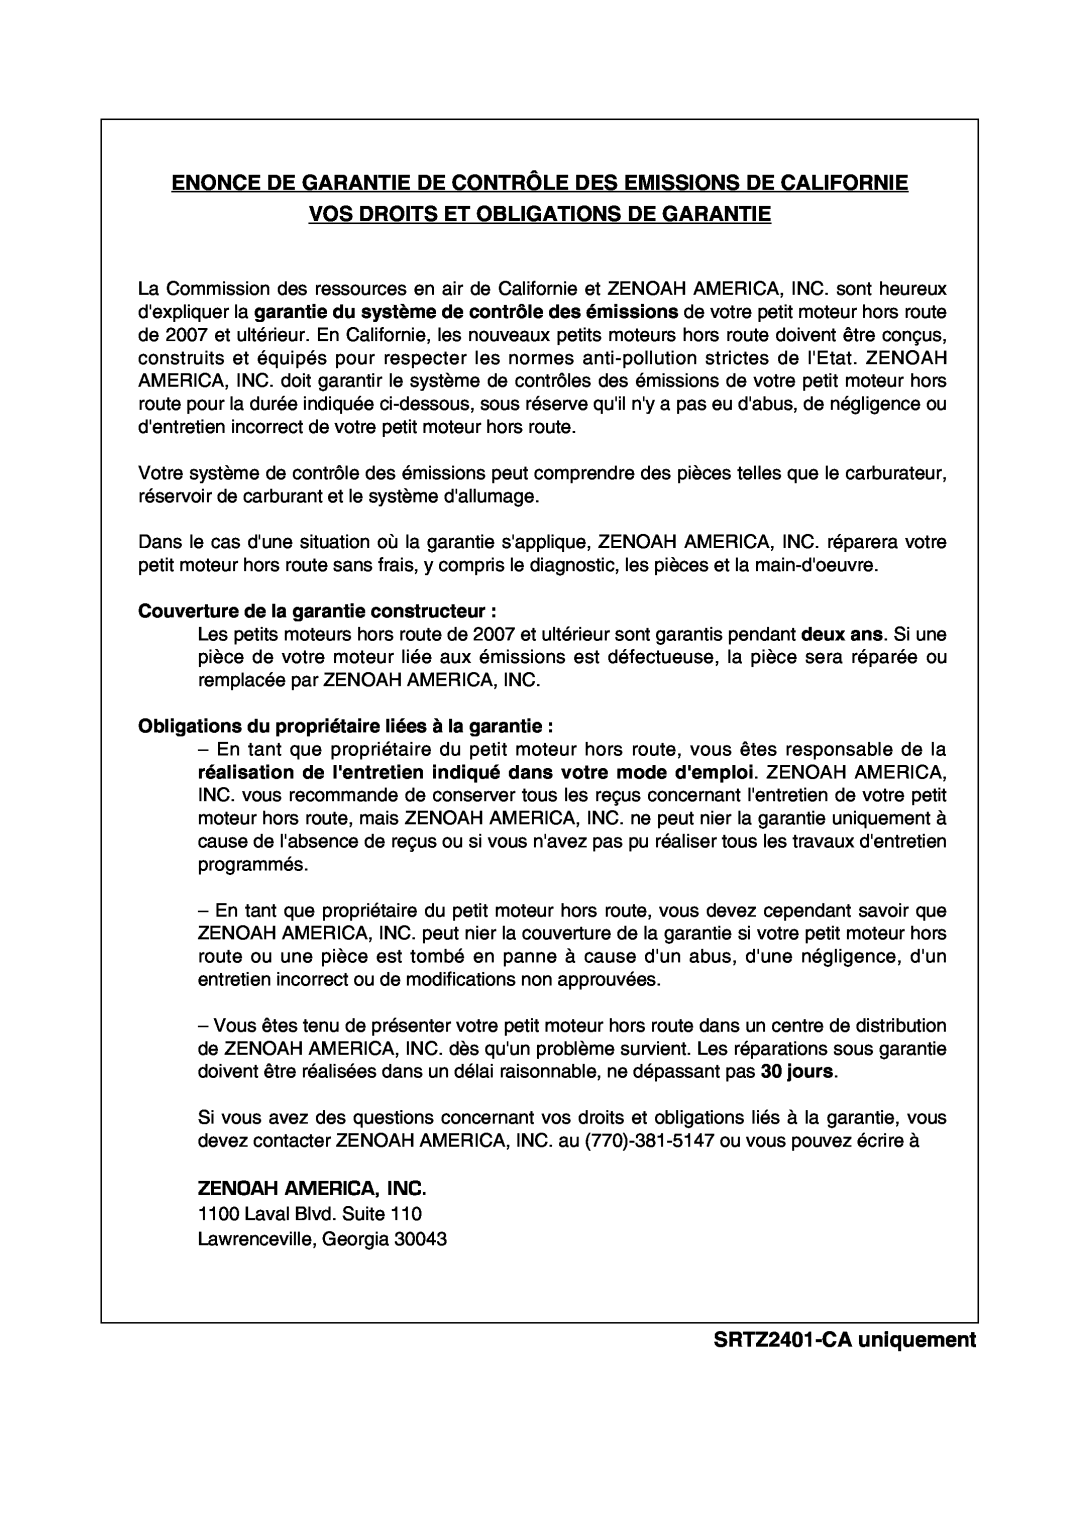 Univex manual Vos Droits Et Obligations De Garantie, SRTZ2401-CAuniquement, Couverture de la garantie constructeur 